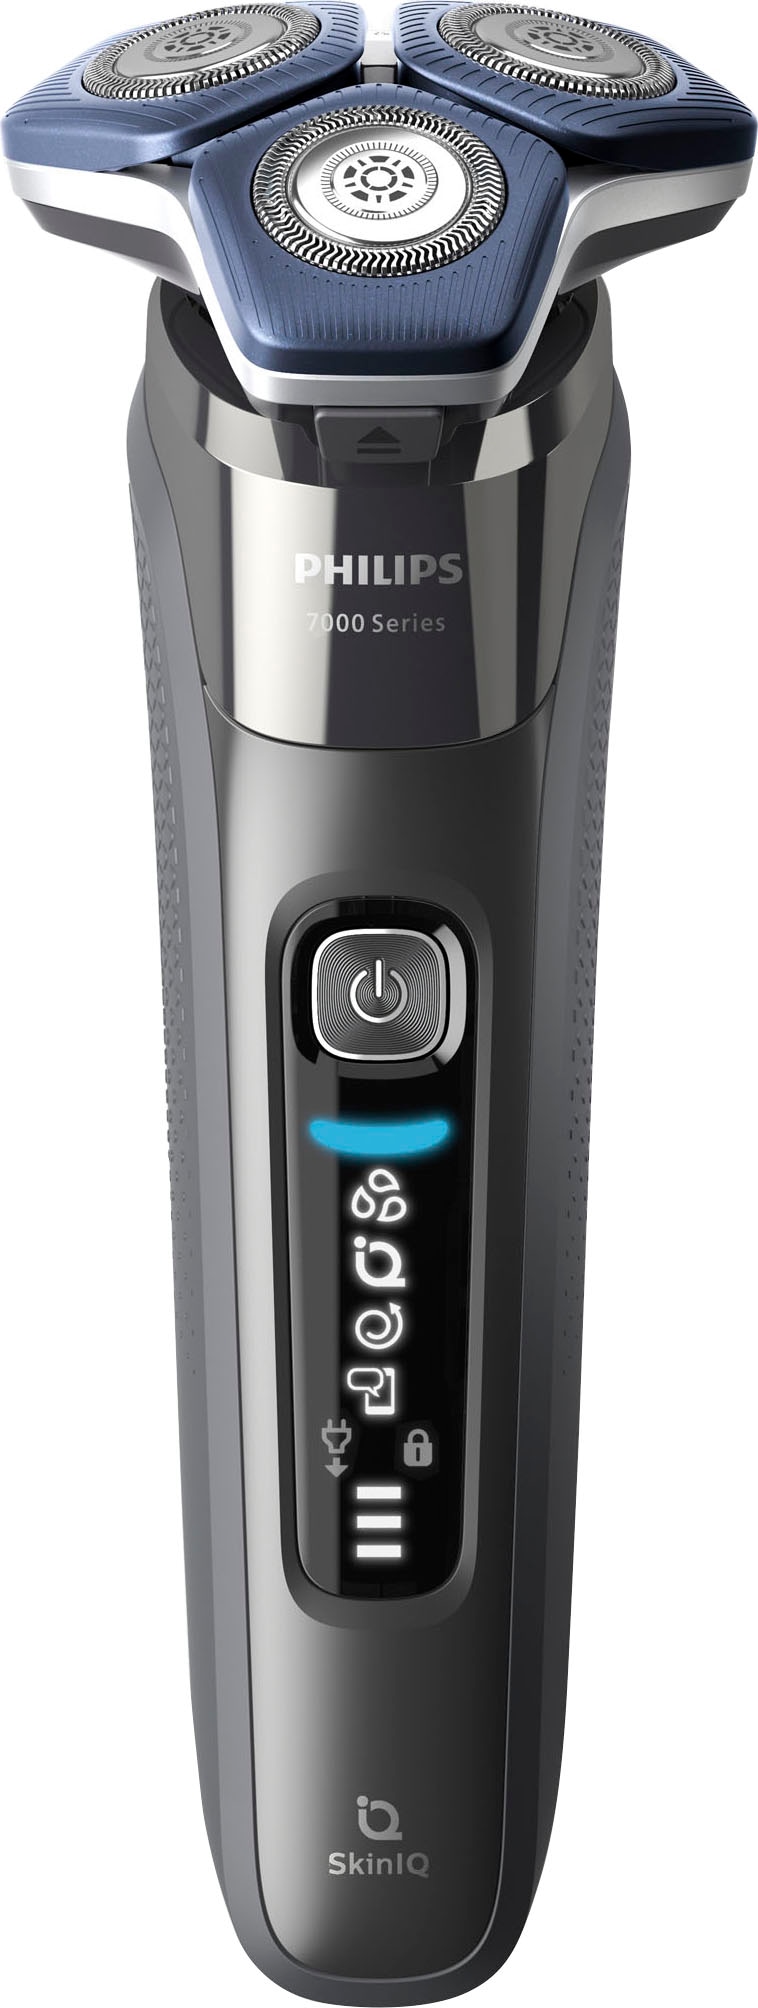 Philips Elektrorasierer »Shaver Series 7000 S7887/63«, Reinigungsstation, ausklappbarer Präzisionstrimmer, 4 Reinigungskartuschen, Ladestand, Etui, mit SkinIQ Technologie